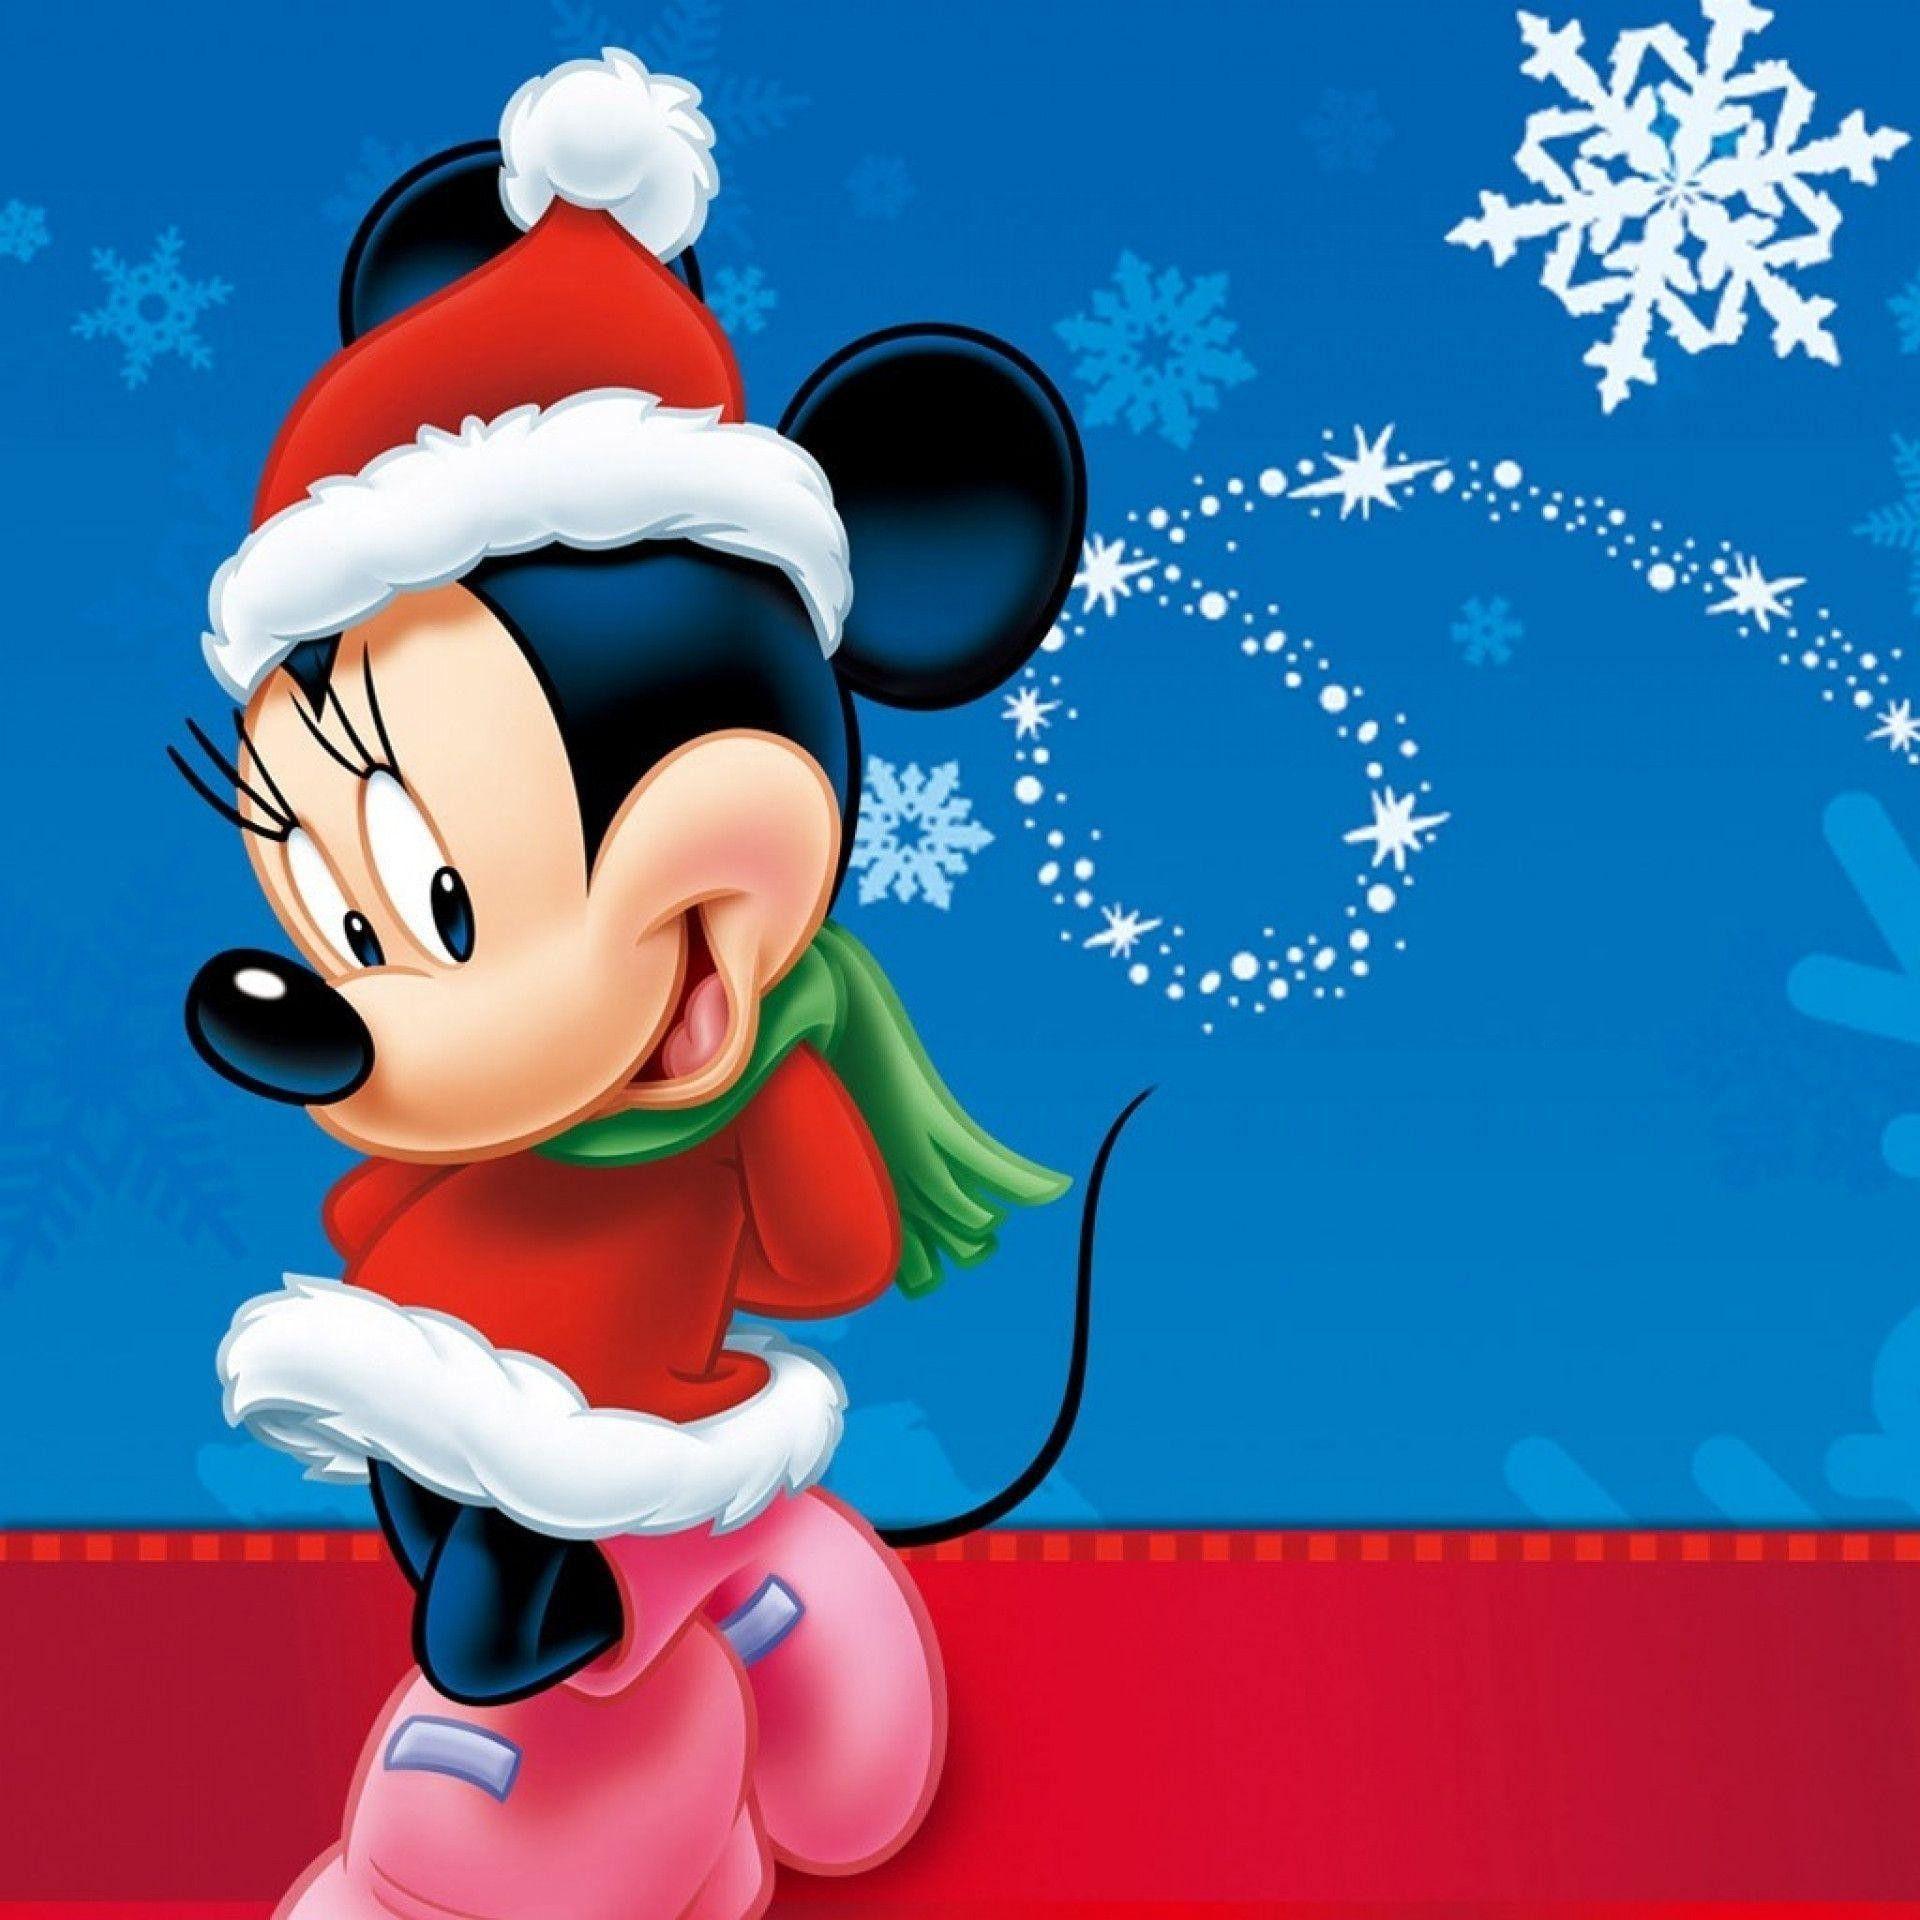 1920x1920 Chuột Mickey Tải xuống Hình nền động - Chuột Minnie Giáng sinh - 1920x1920 - Tải xuống Hình nền HD